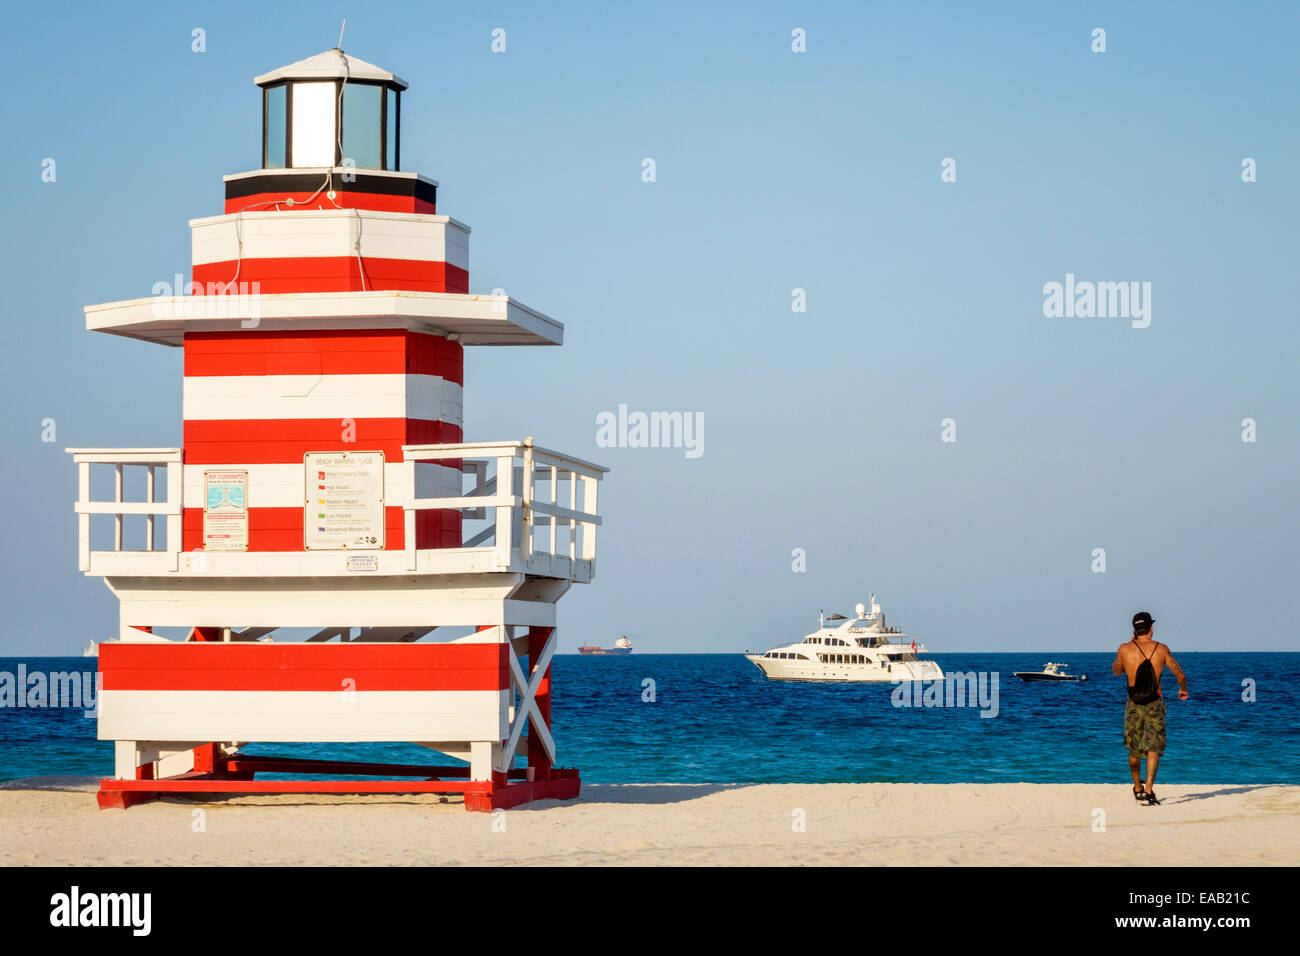 Miami Beach Floride, sable, phare station de maître-nageur en forme de phare, océan Atlantique, eau, sable, homme hommes, bateau, FL140823027 Banque D'Images